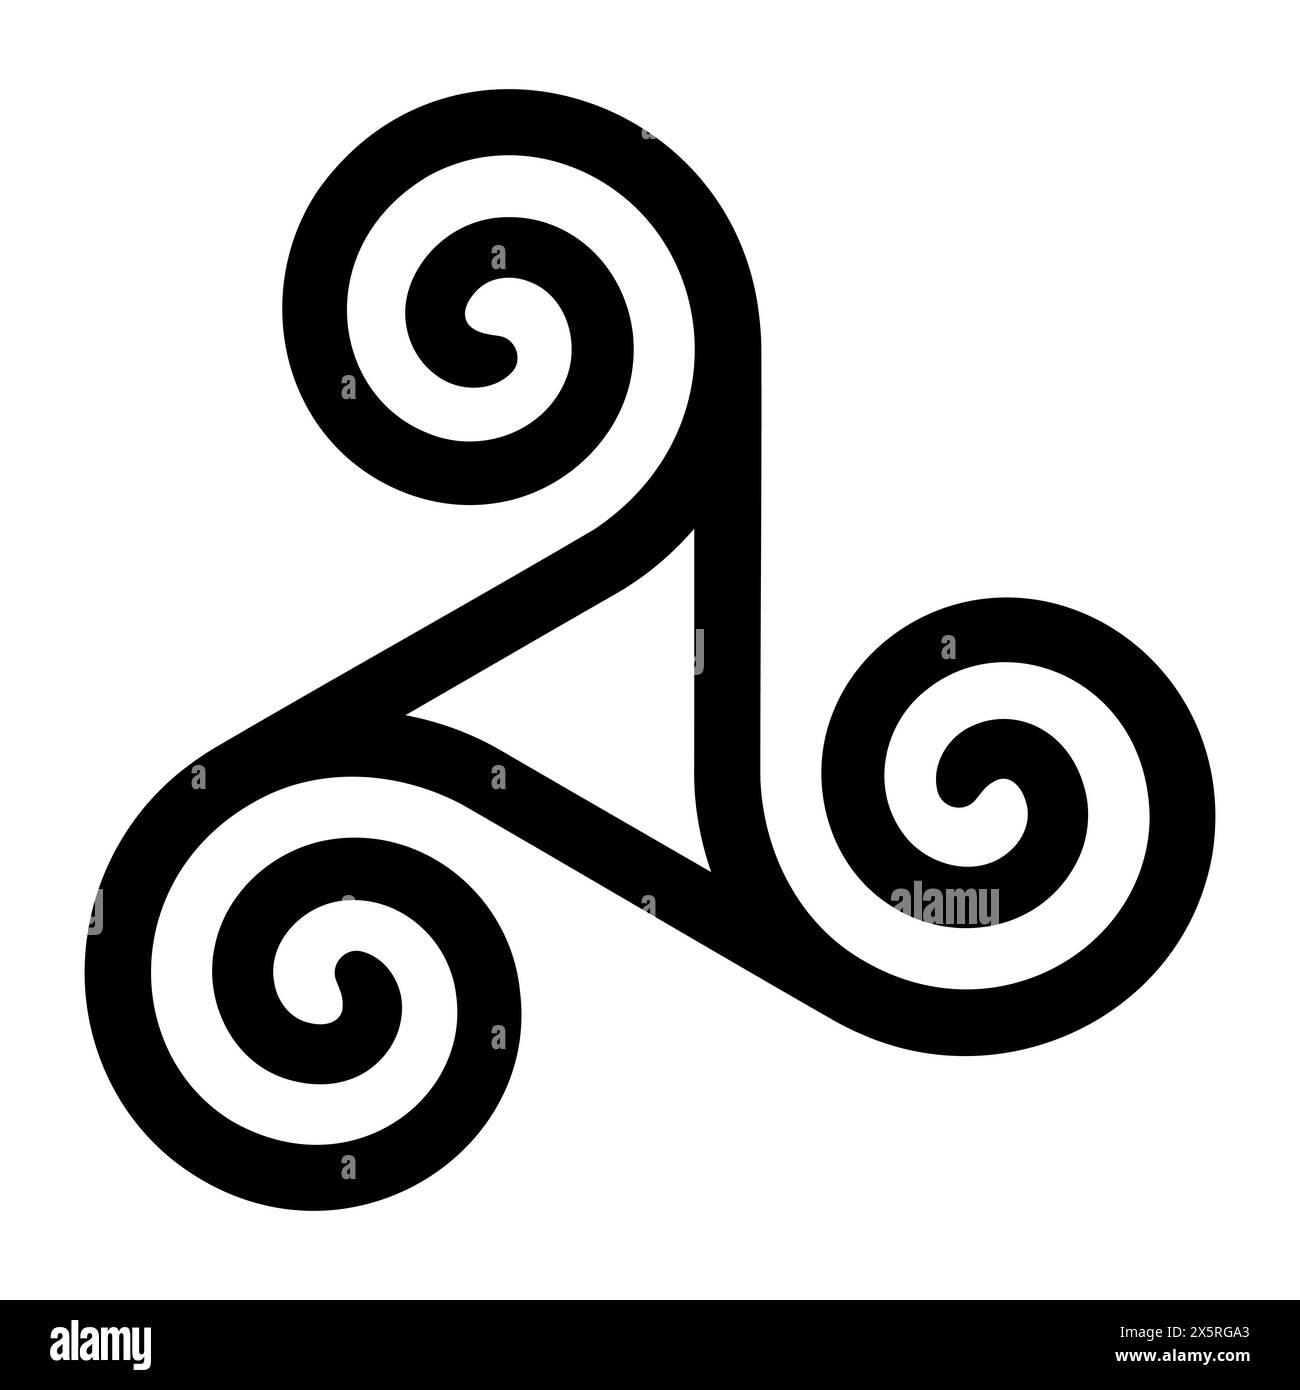 Spiraltriskelion mit hohlem Dreieck in der Mitte. Triskele, altes Symbol und Motiv einer dreifachen Spirale mit Rotationssymmetrie. Stockfoto